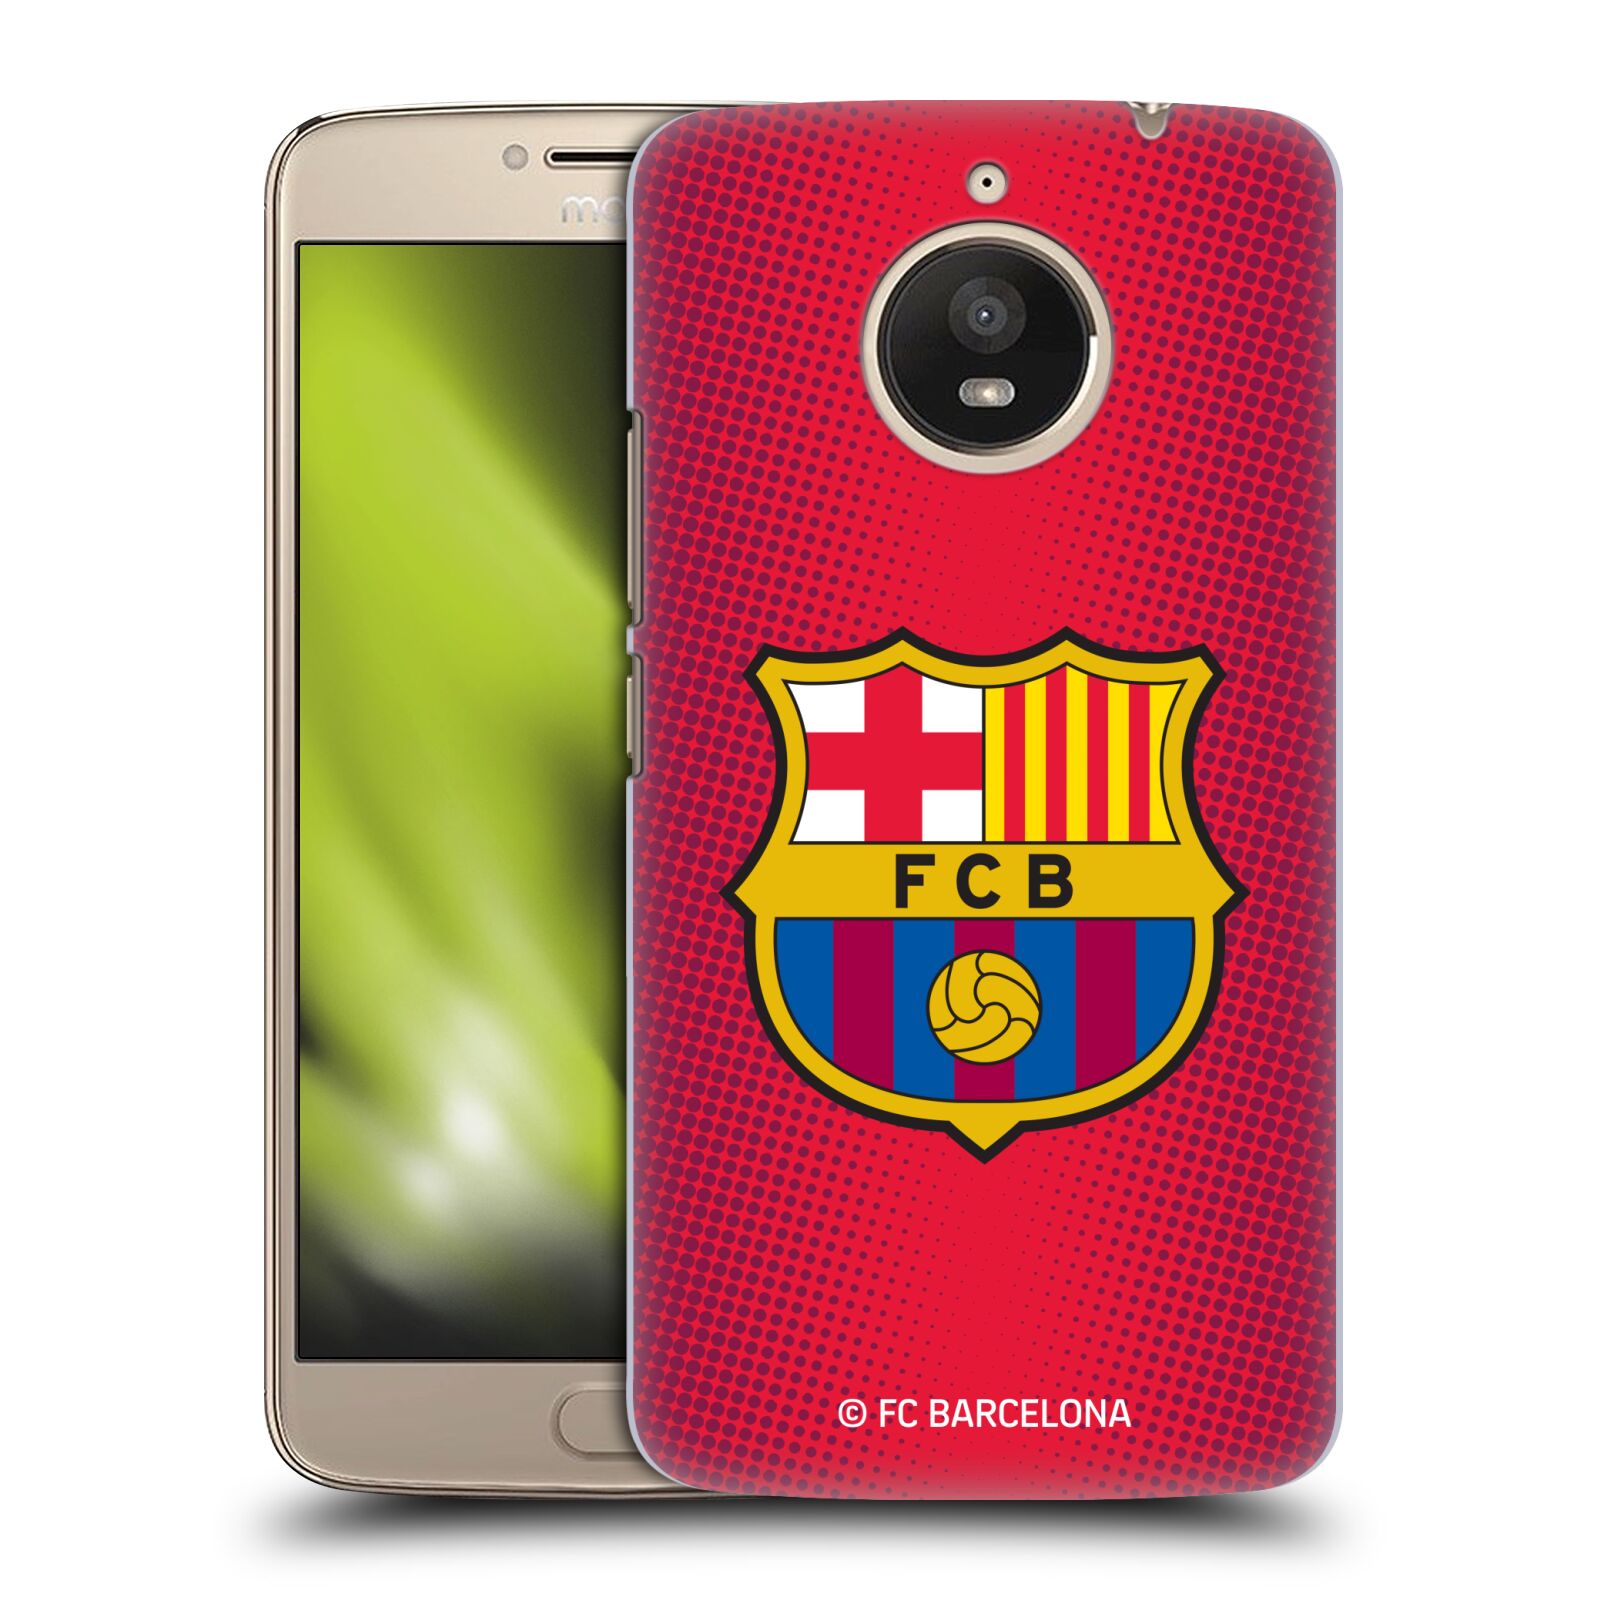 Obal na mobil Lenovo Moto E4 PLUS - HEAD CASE - FC BARCELONA - Velký znak červená a modrá